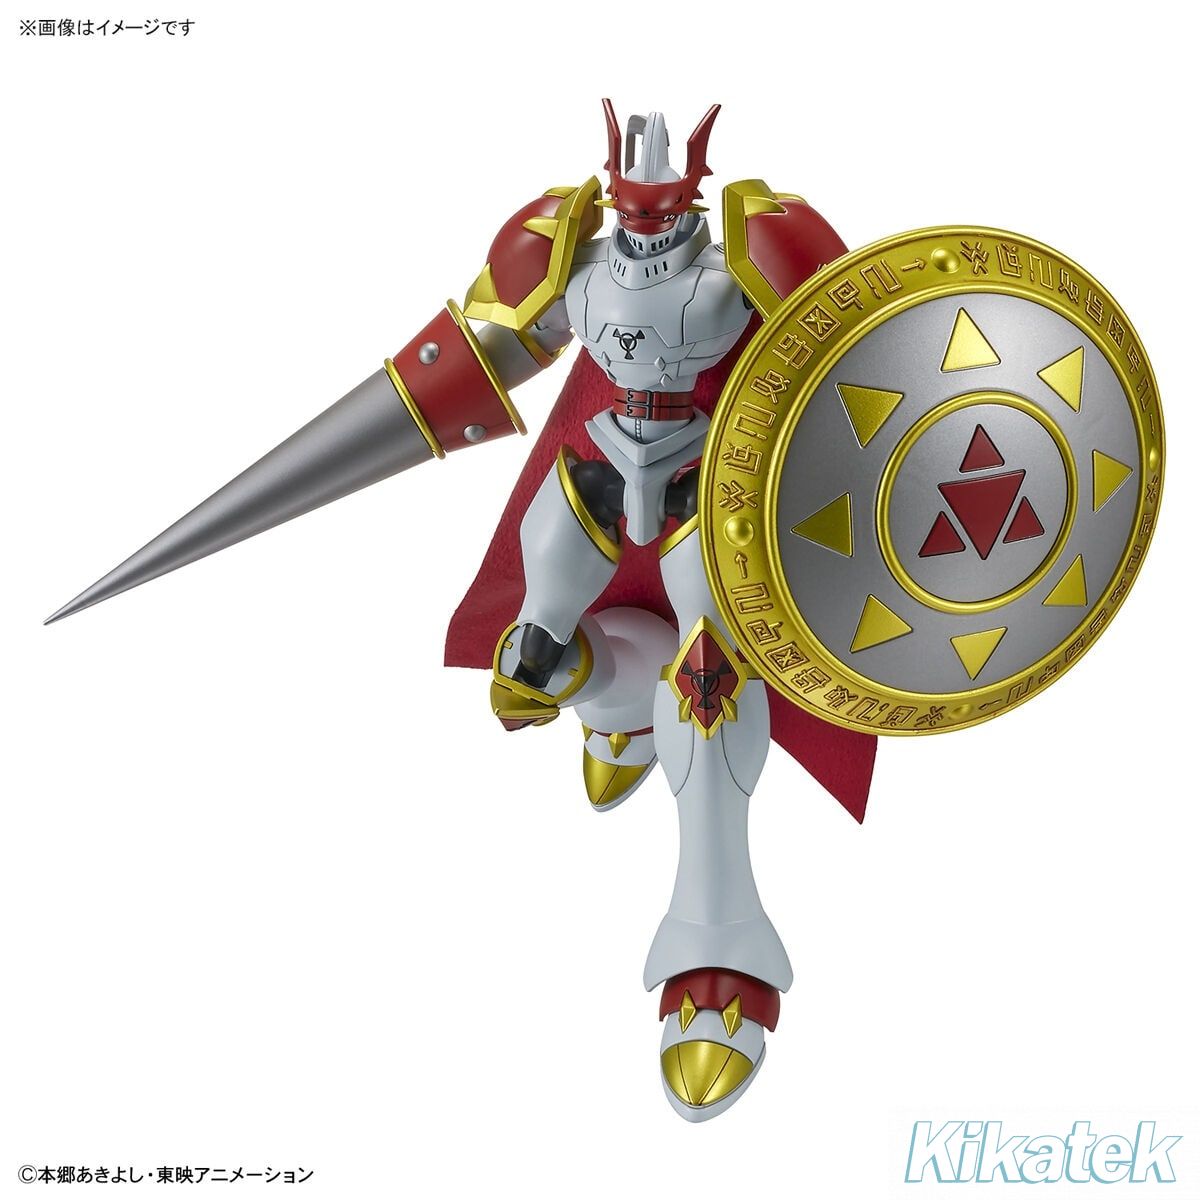 Figure-rise Standard Dukemon / Gallantmon (Digimon): Kikatek UK